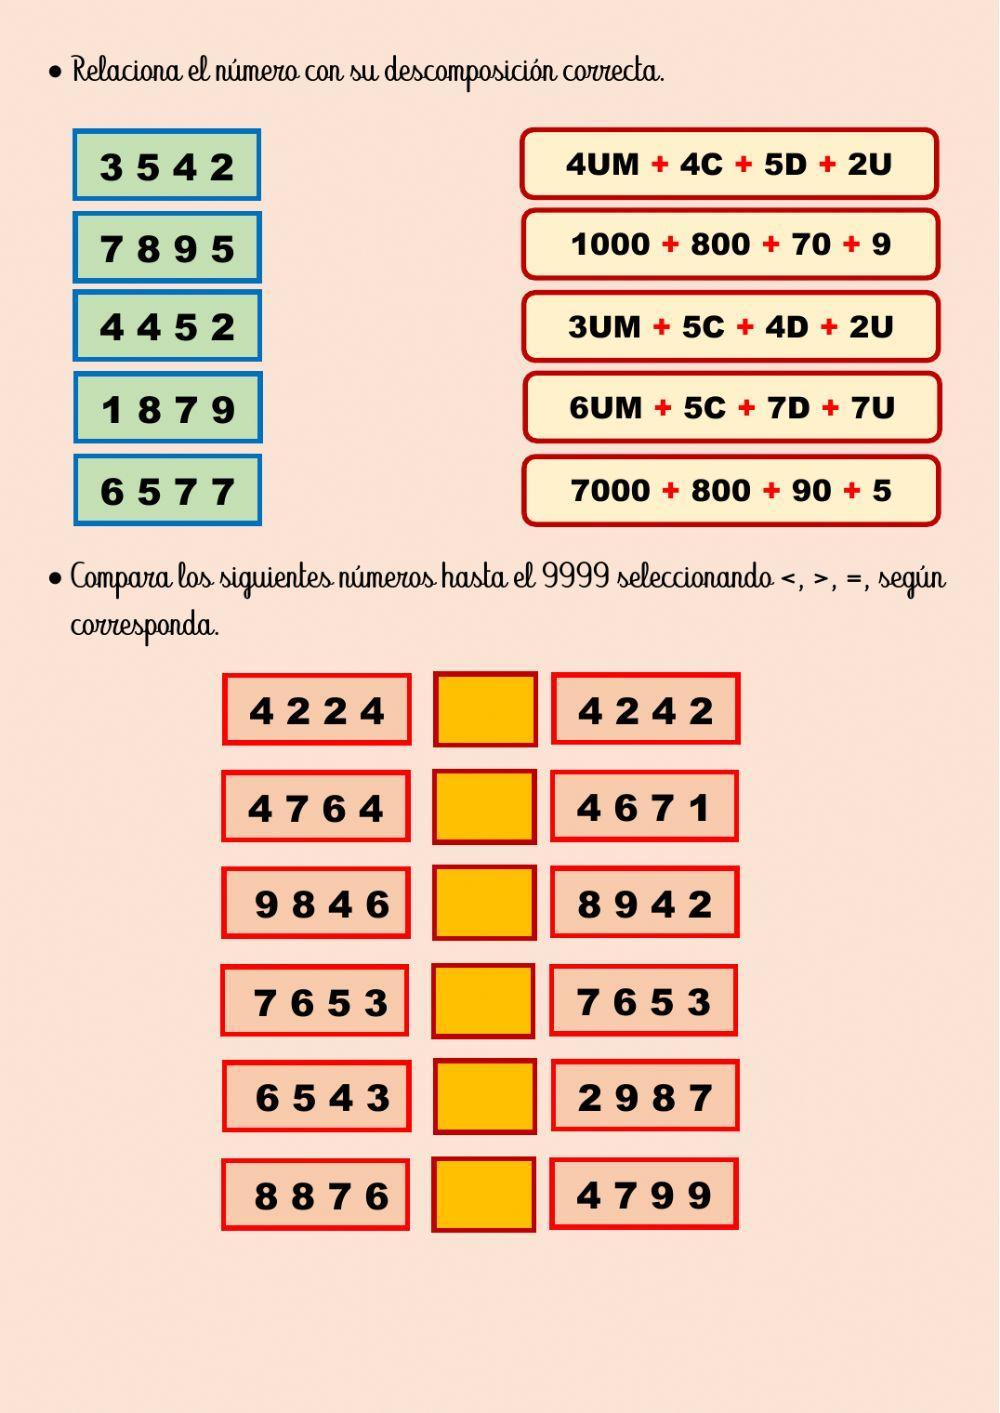 Descomposición y comparación de números (9999)